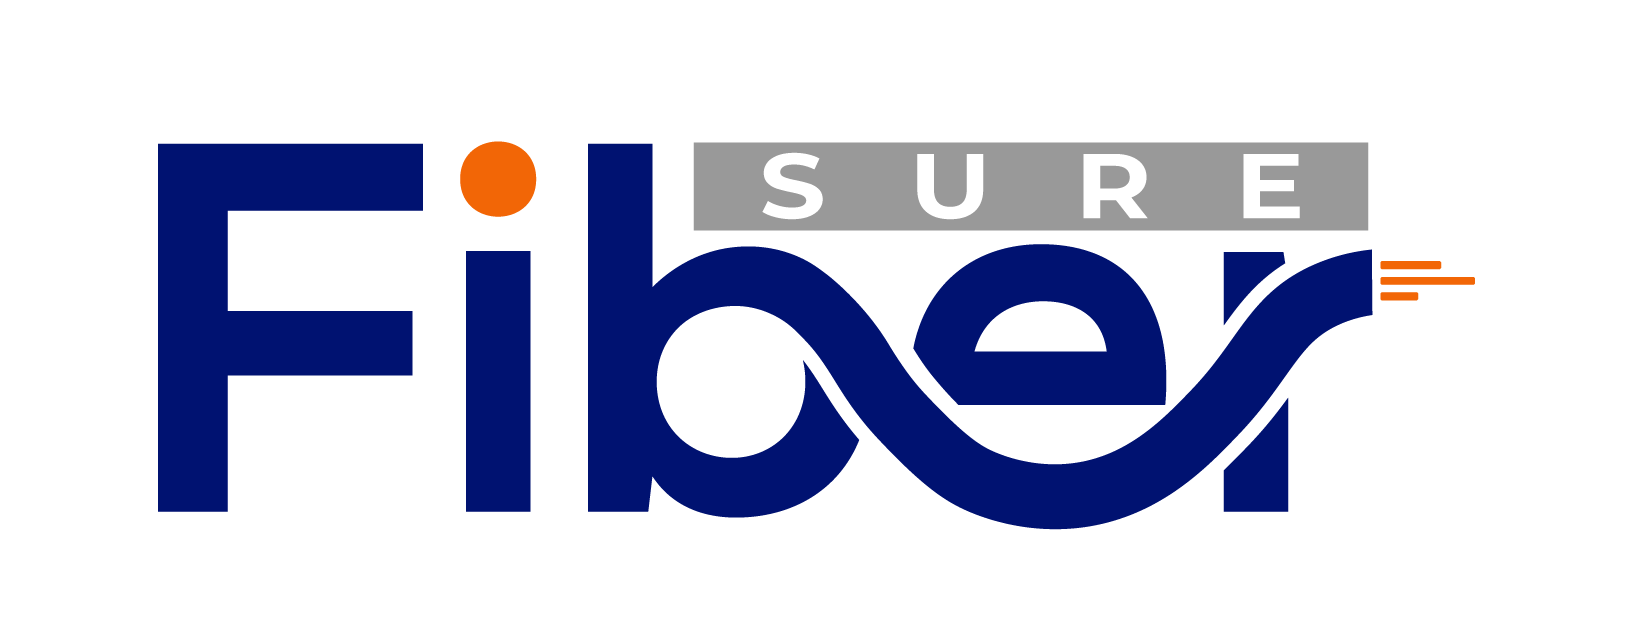 Sure Fiber logo